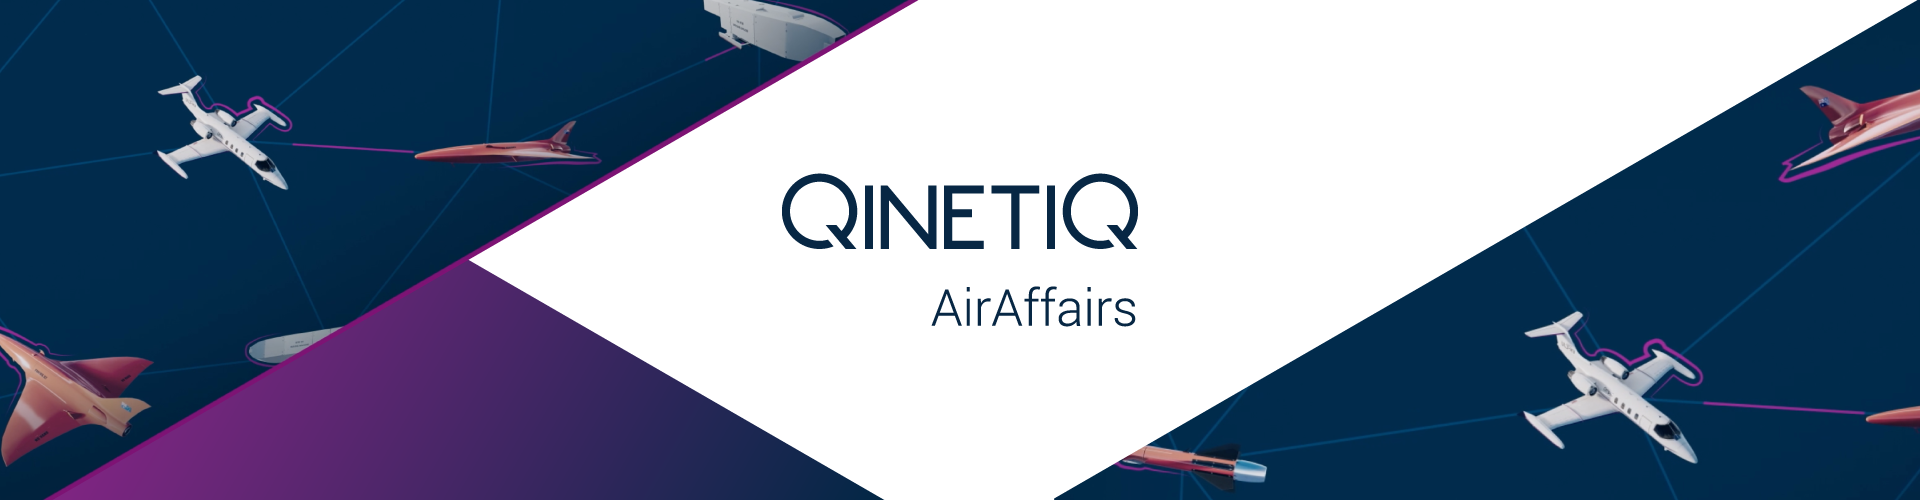 QinetiQ Air Affairs banner graphic